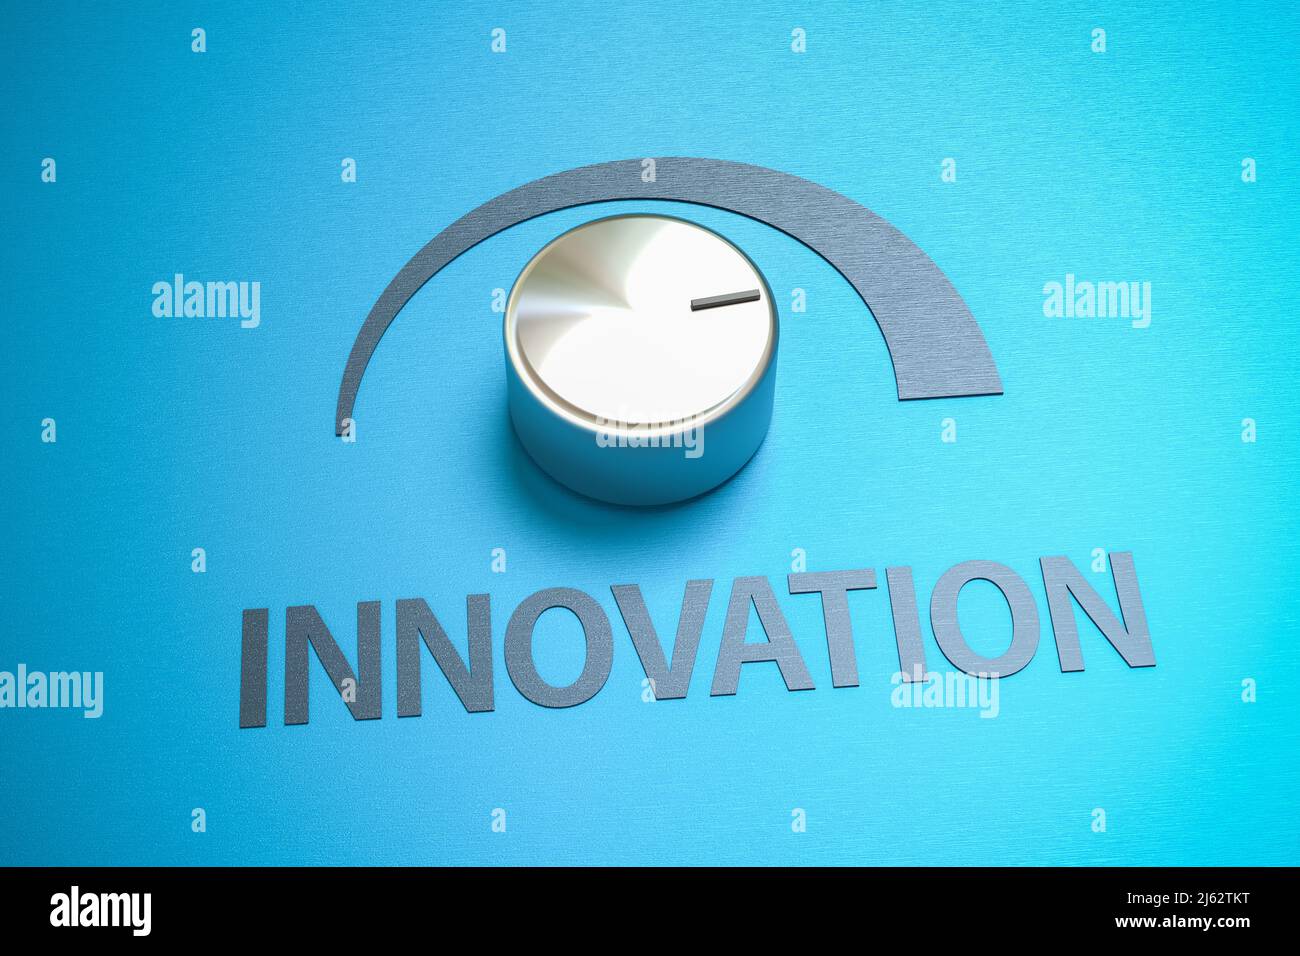 Botón metálico girado a escala completa con la palabra 'Innovación' como etiqueta - concepto de medidas para mejorar la innovación. Foto de stock